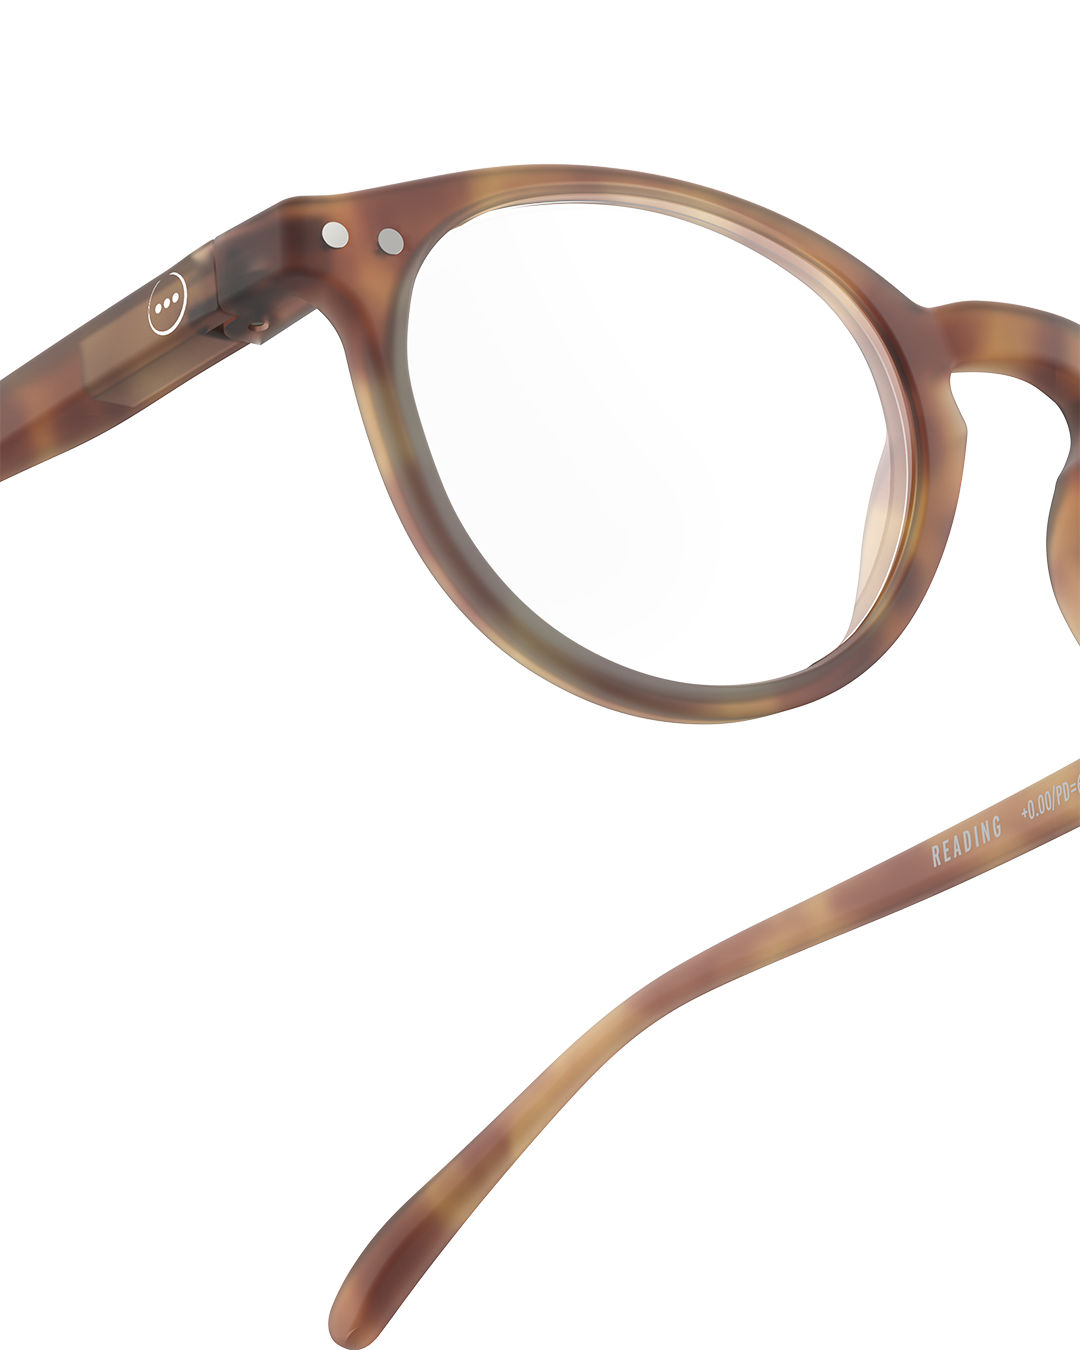 Unisex Reading Glasses - Style A - Colour Havane